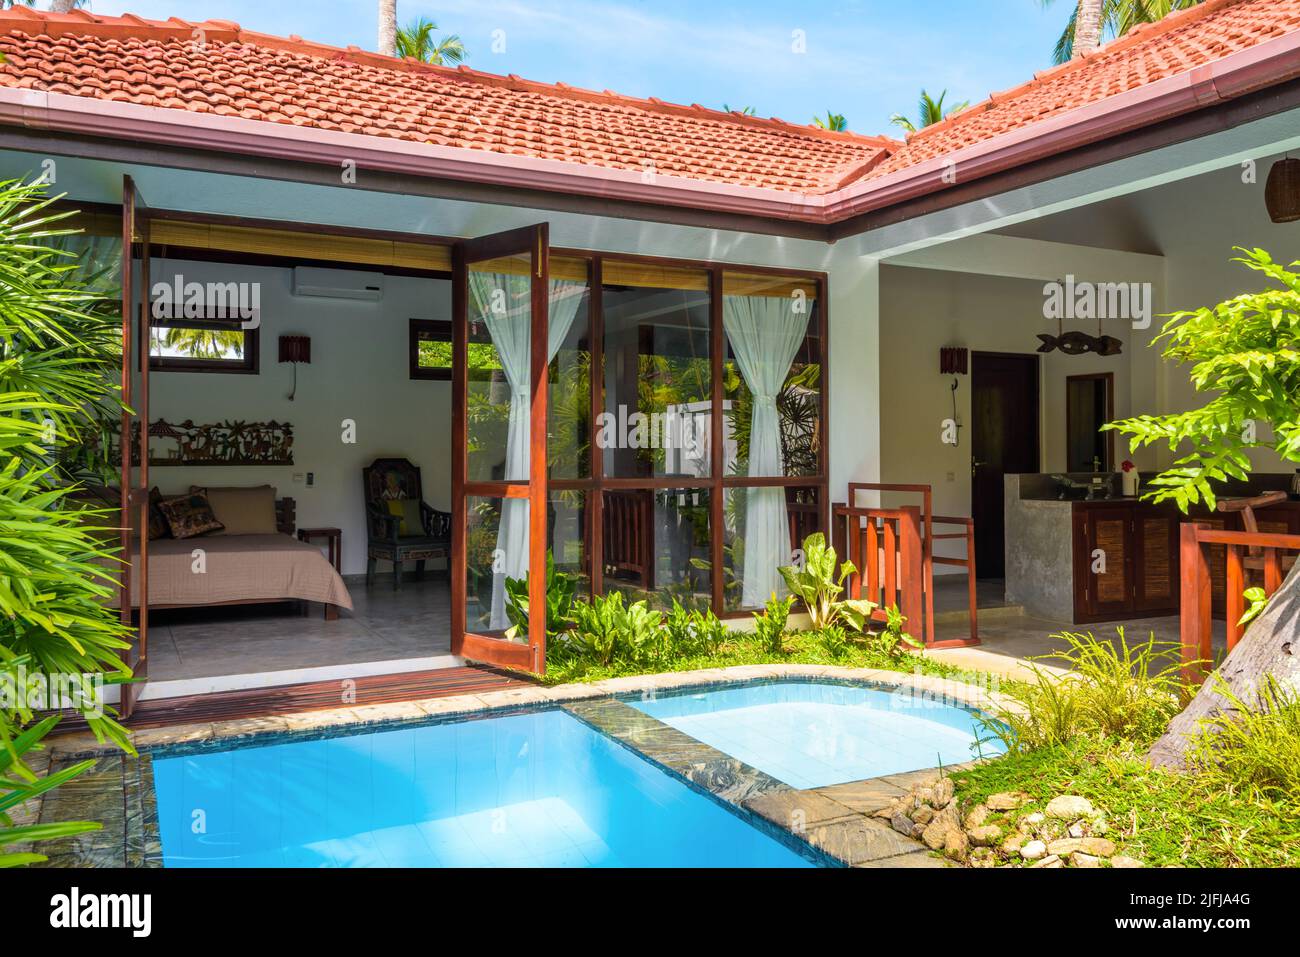 Sri Lanka - Nov 4, 2017: Luxus-Haus mit Pool im Hinterhof. Sommerferienhaus im indischen oder karibischen Stil und Garten im Innenhof. Schöne Villa auf Stockfoto